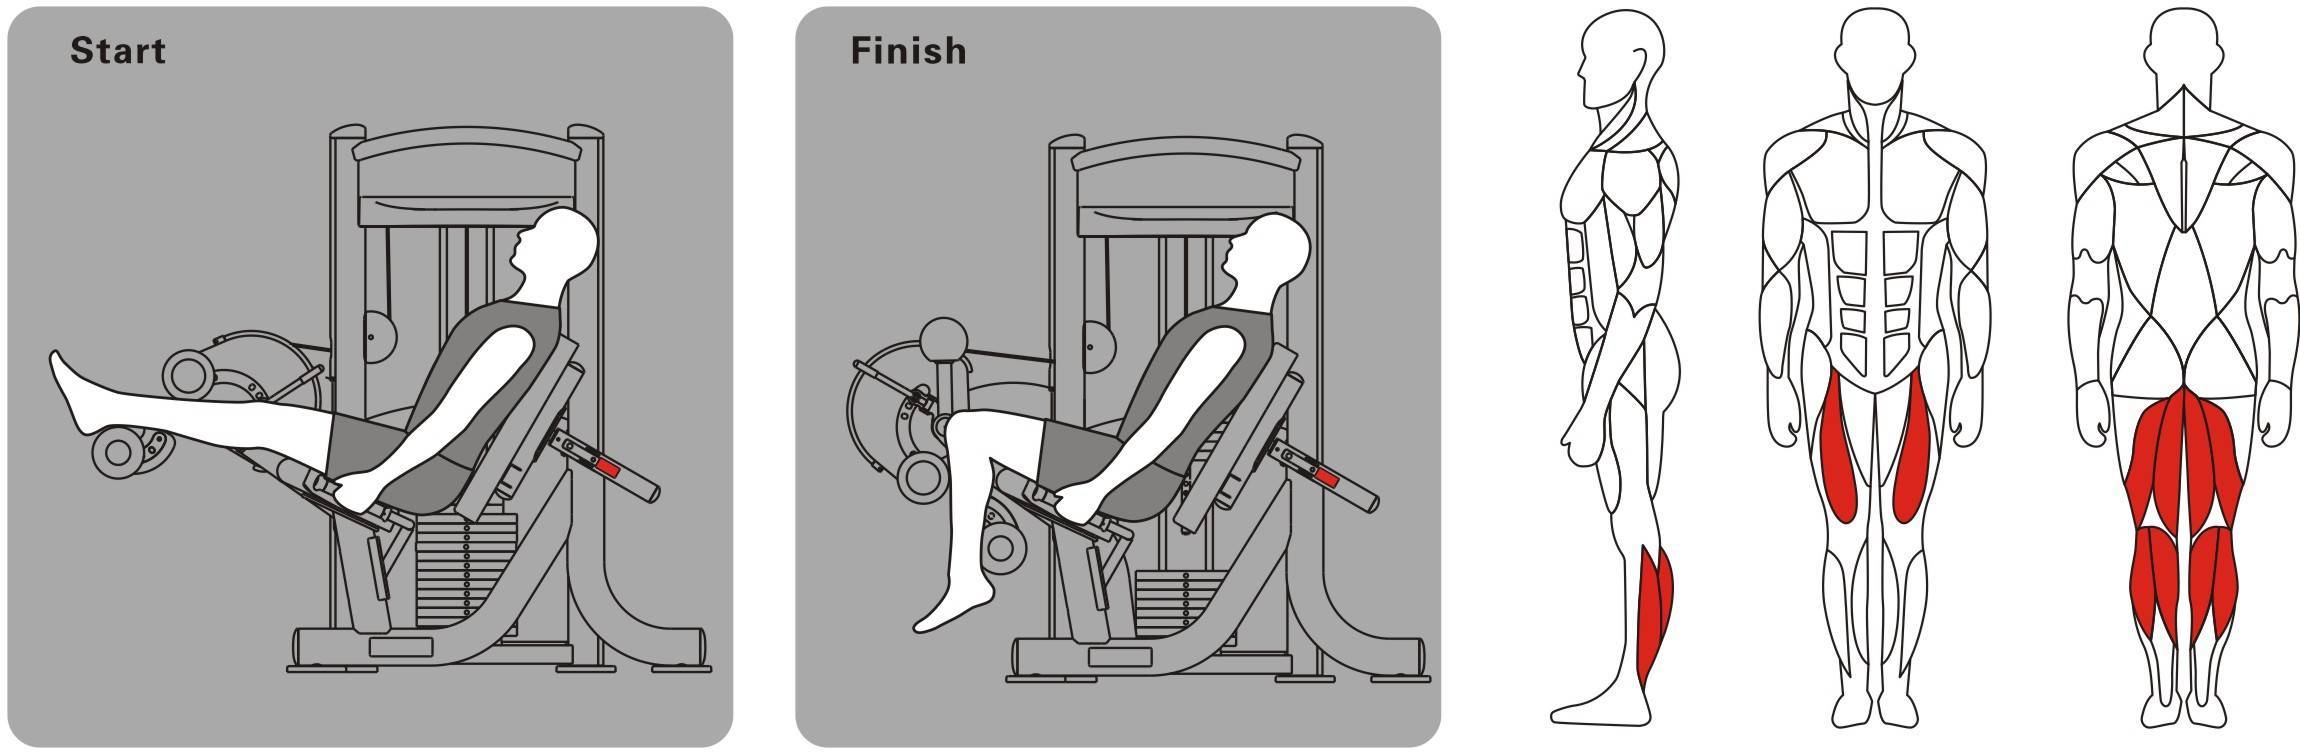 Рекомендации по выполнению сгибаний ног в тренажере лежа, сидя и стоя